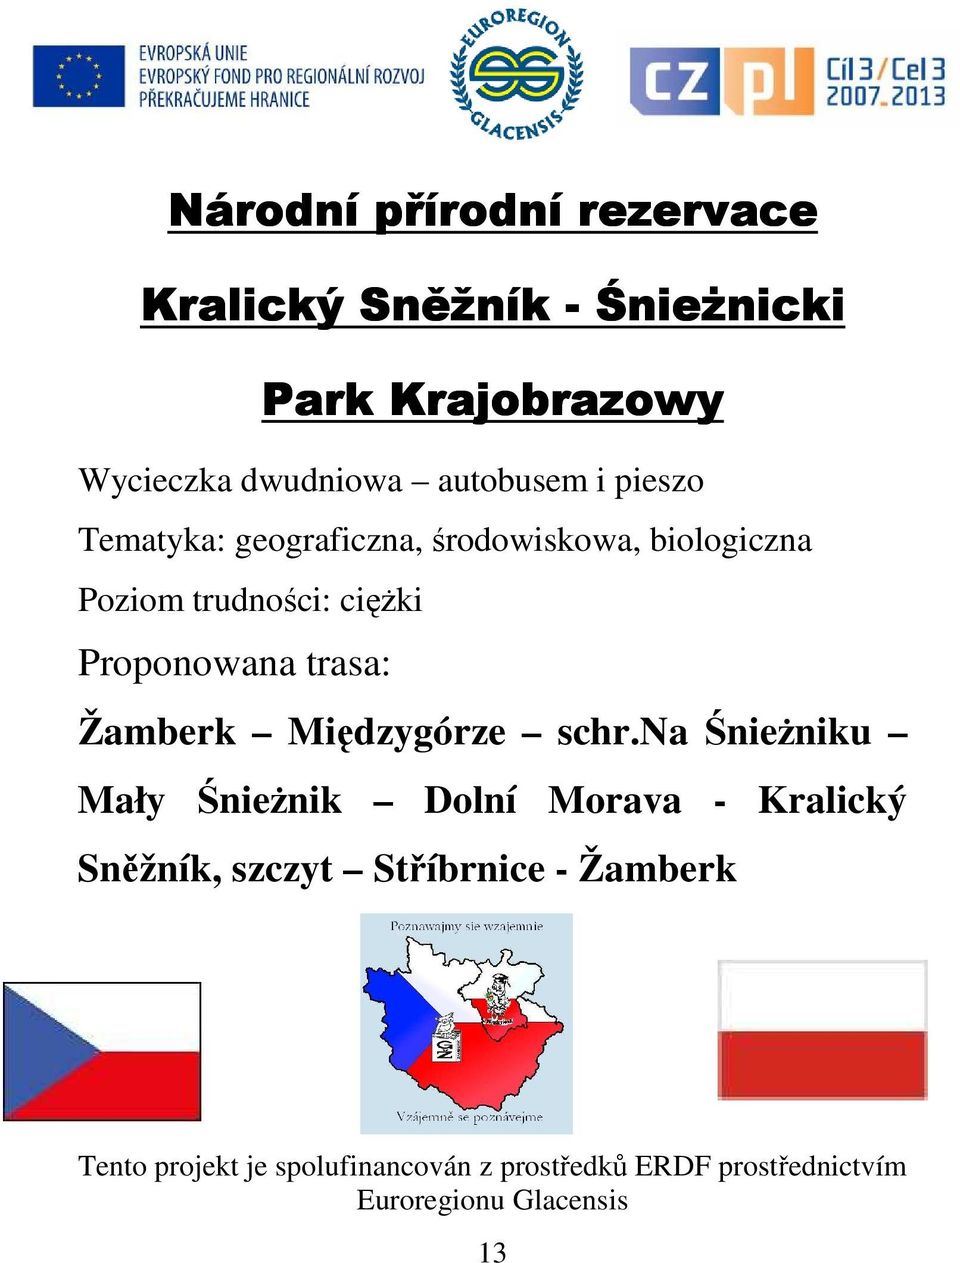 Proponowana trasa: Žamberk Międzygórze schr.